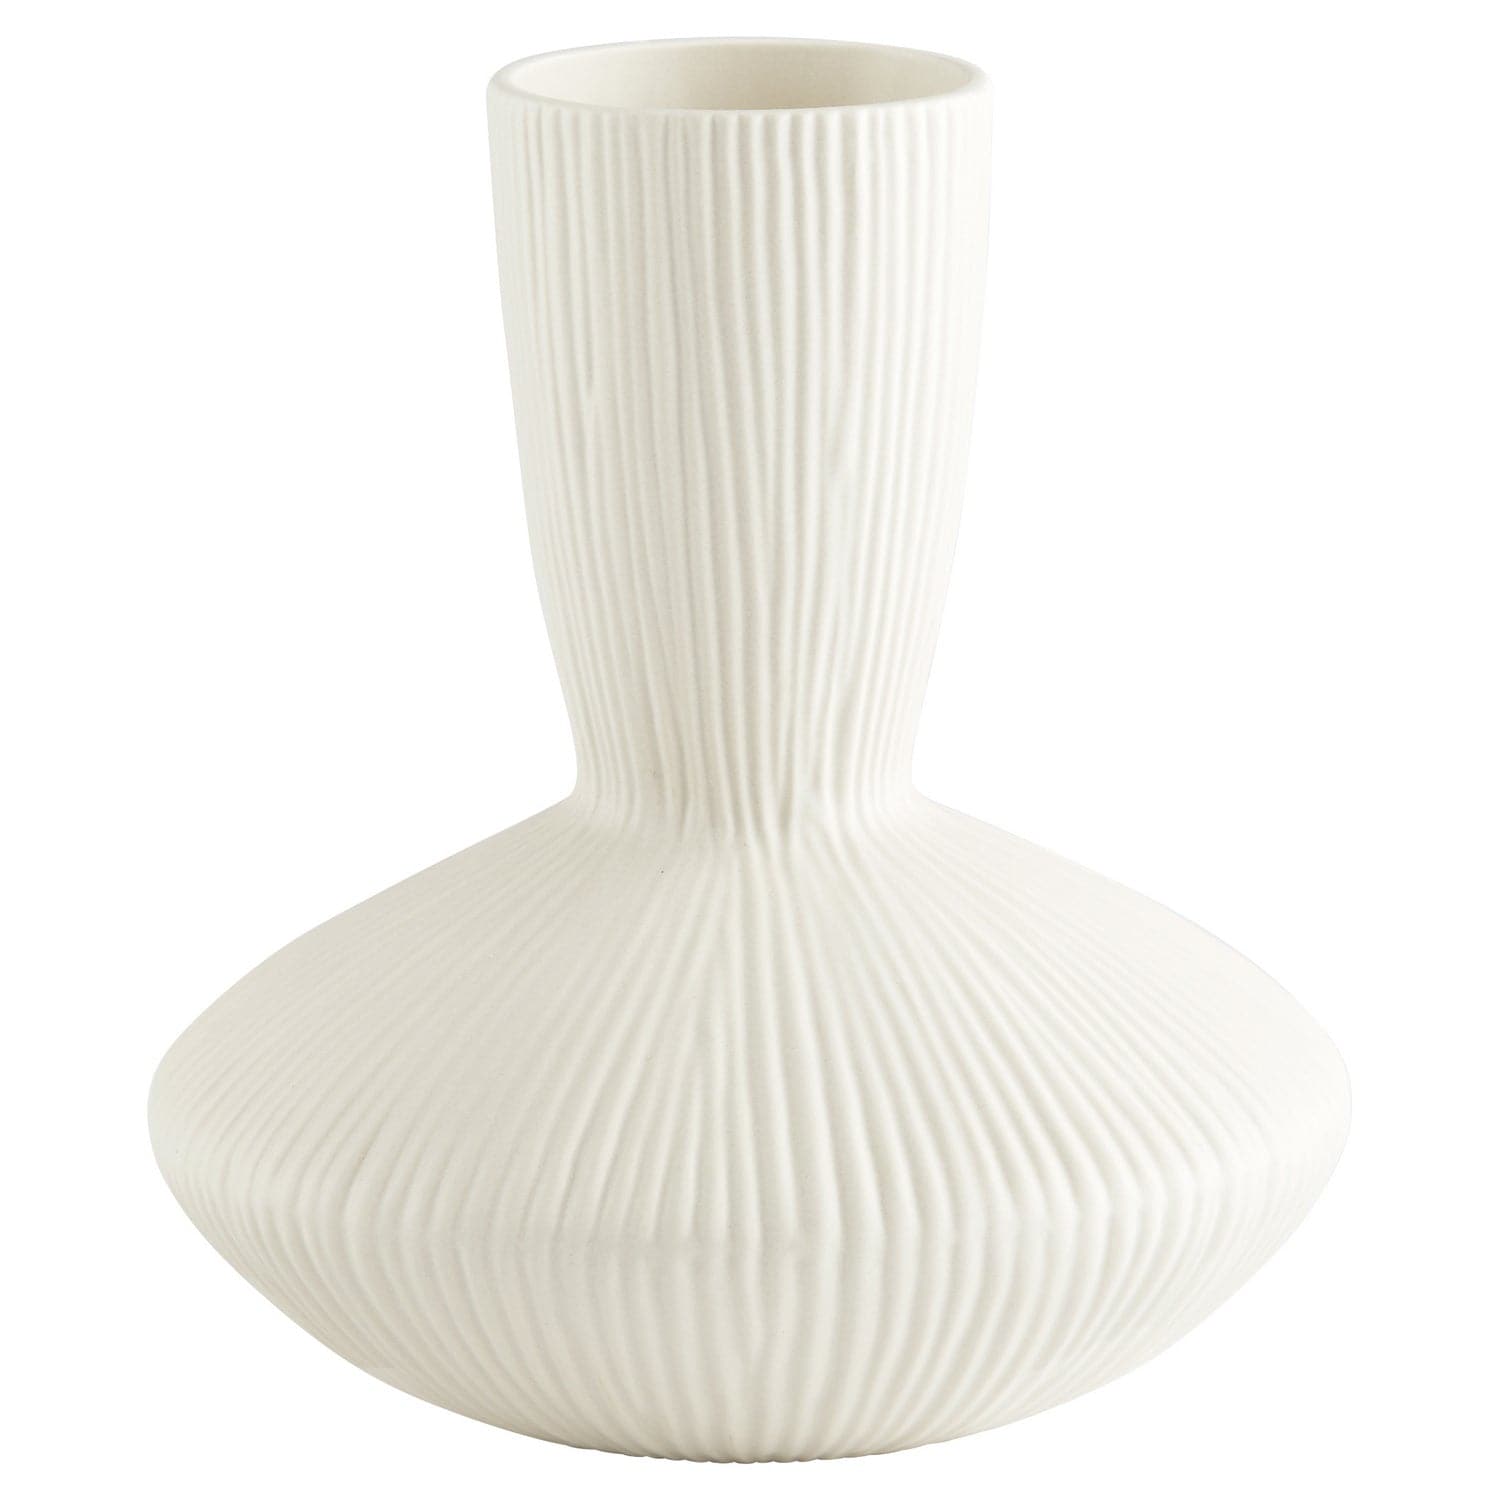 Cyan - 11211 - Vase - White